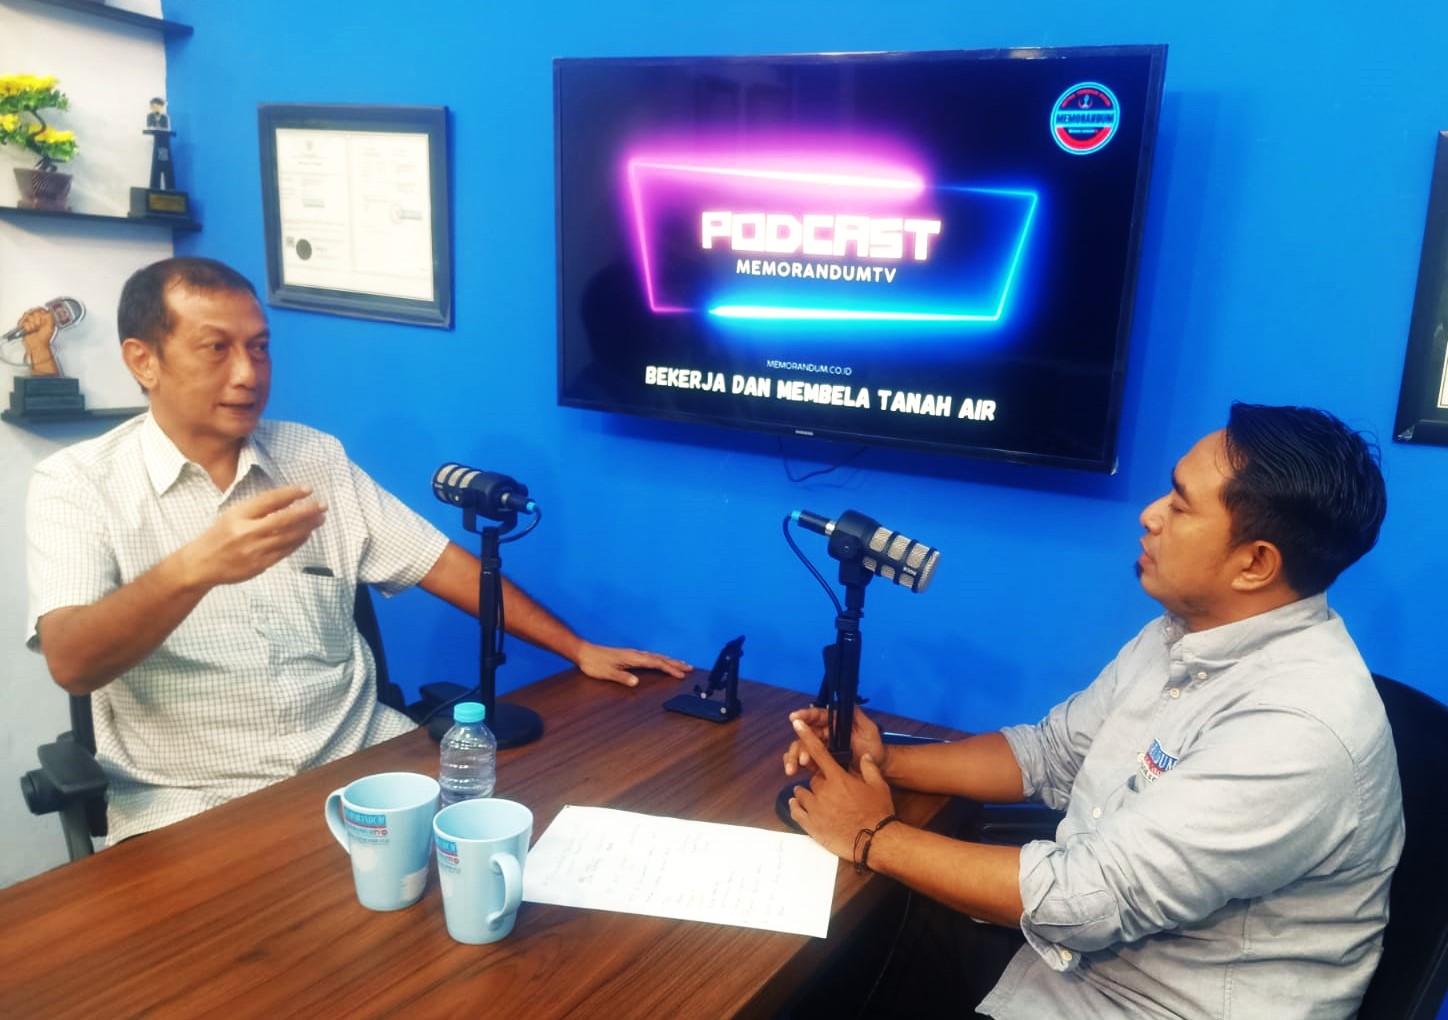 Nirapambudi Devianto, Sp.PD, Dokter Spesialis Penyakit Dalam Berbagi Pengalaman di Podcast Memorandum TV